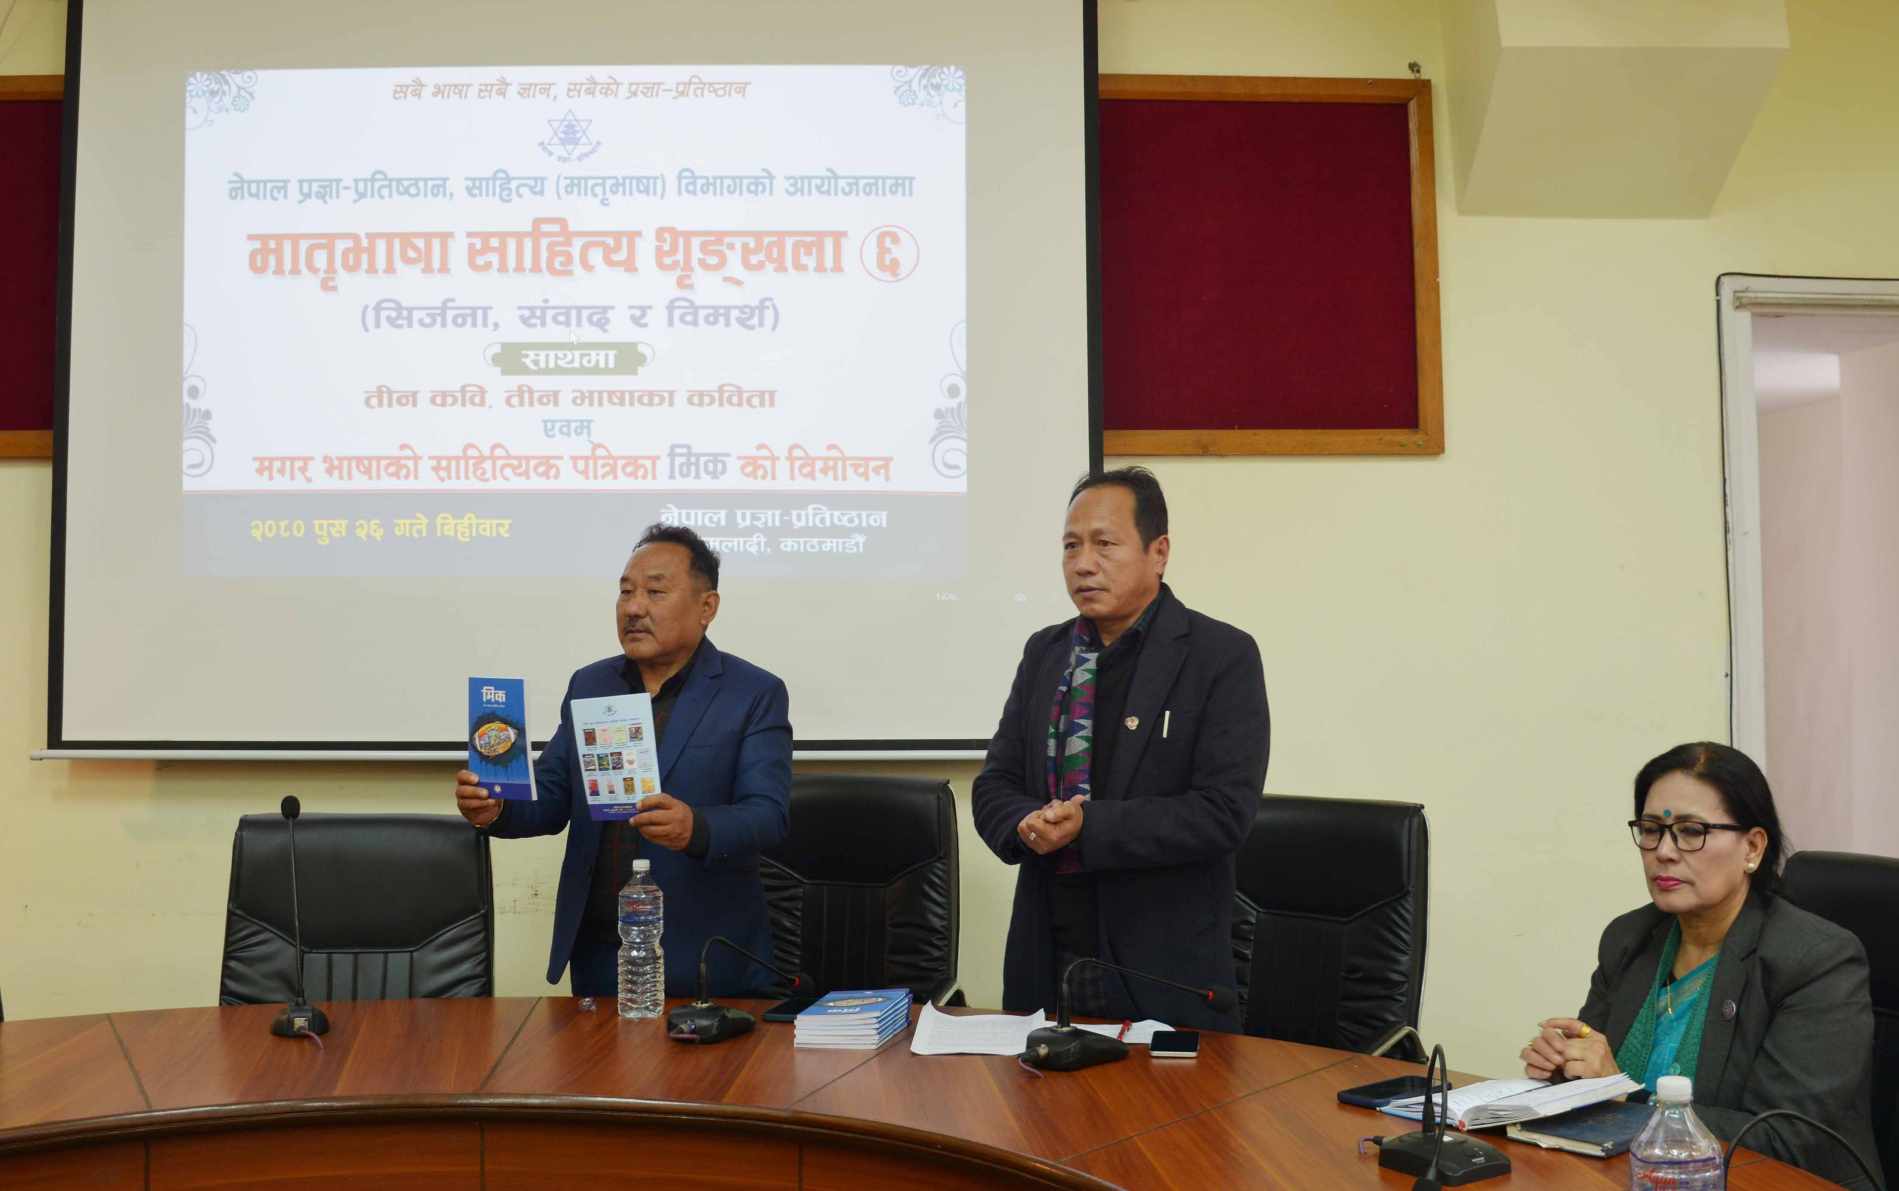 नेपाल प्रज्ञा प्रतिष्ठानबाट प्रकाशित मगर भाषाको साहित्यिक पत्रिका ‘मिक’ विमोचित